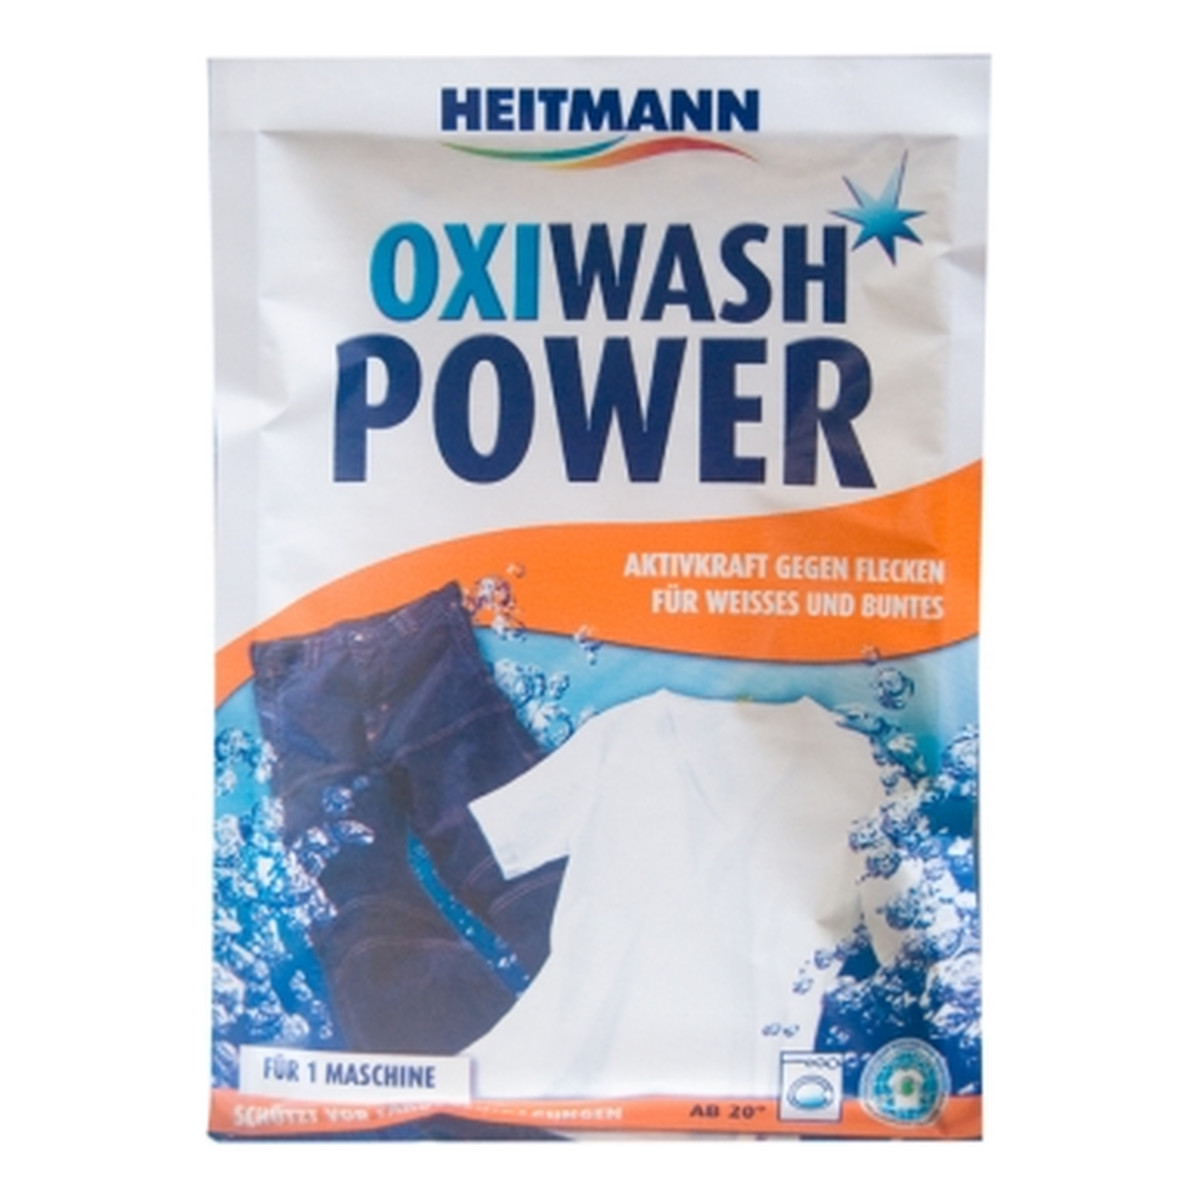 Heitmann Oxi Wash Power Odplamiacz W Proszku pęknięte opakowanie 50g